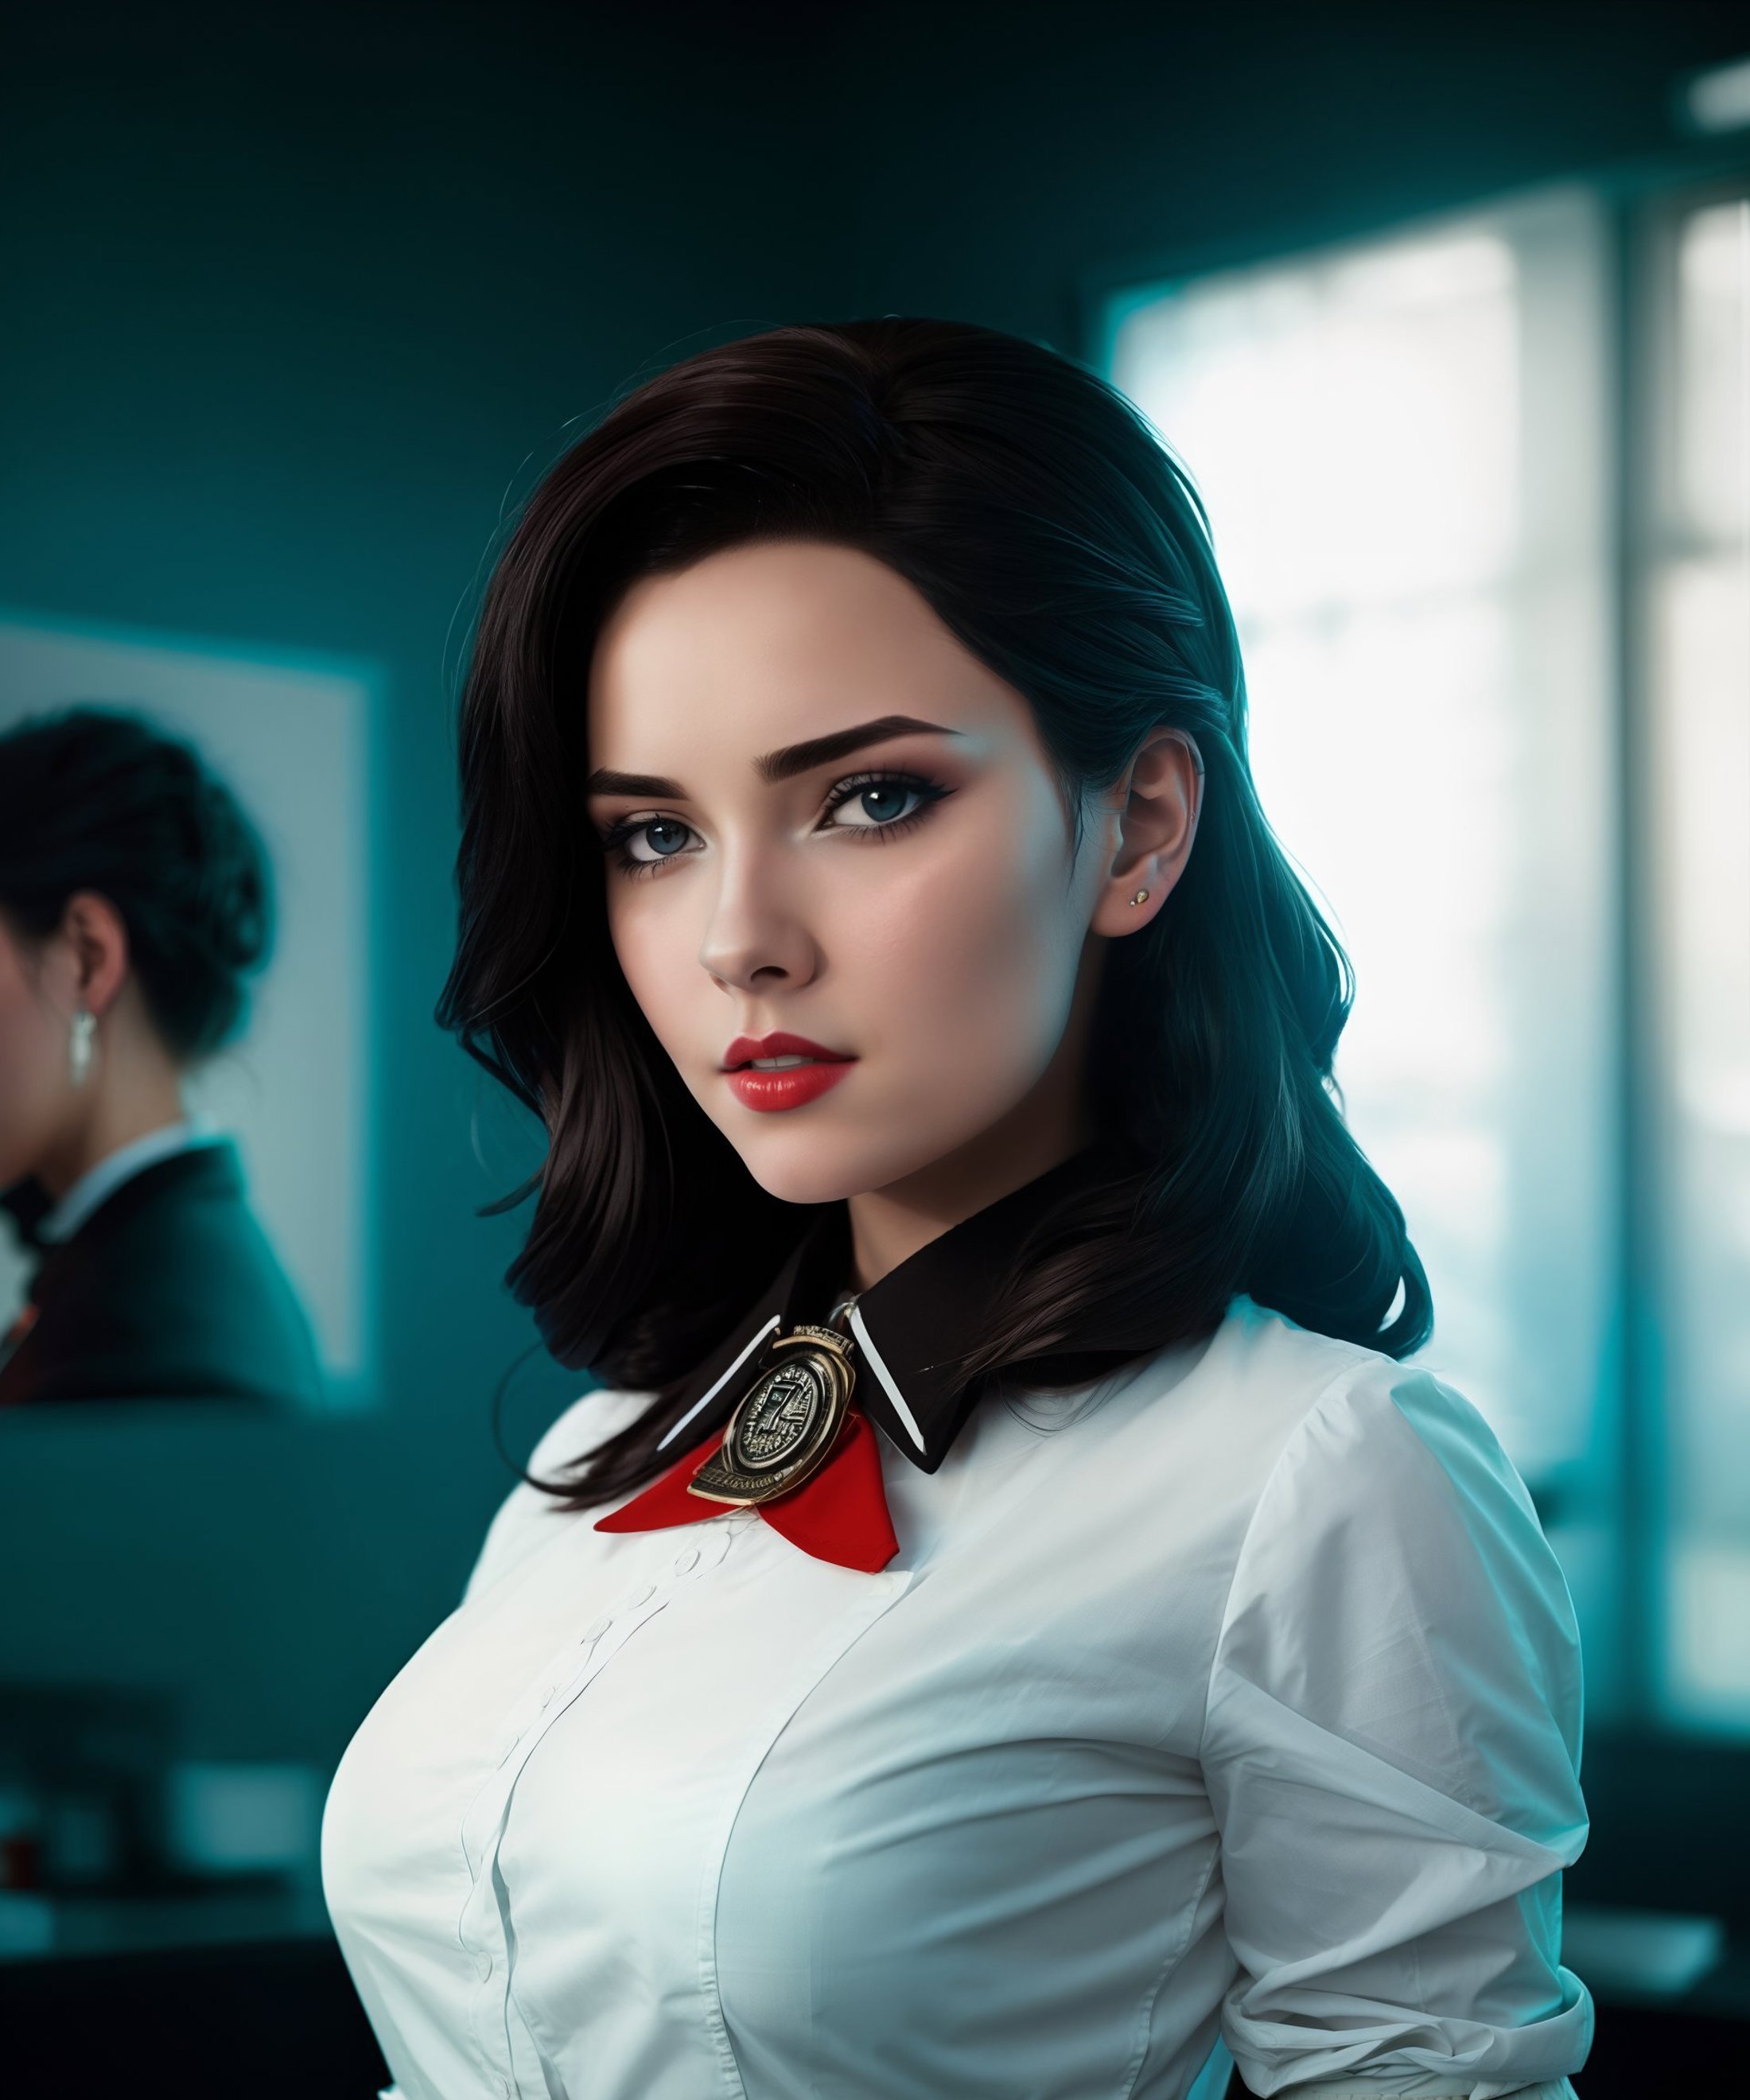 Elizabeth - Bioshock [ cosplay ] image by Digital_Art_AI